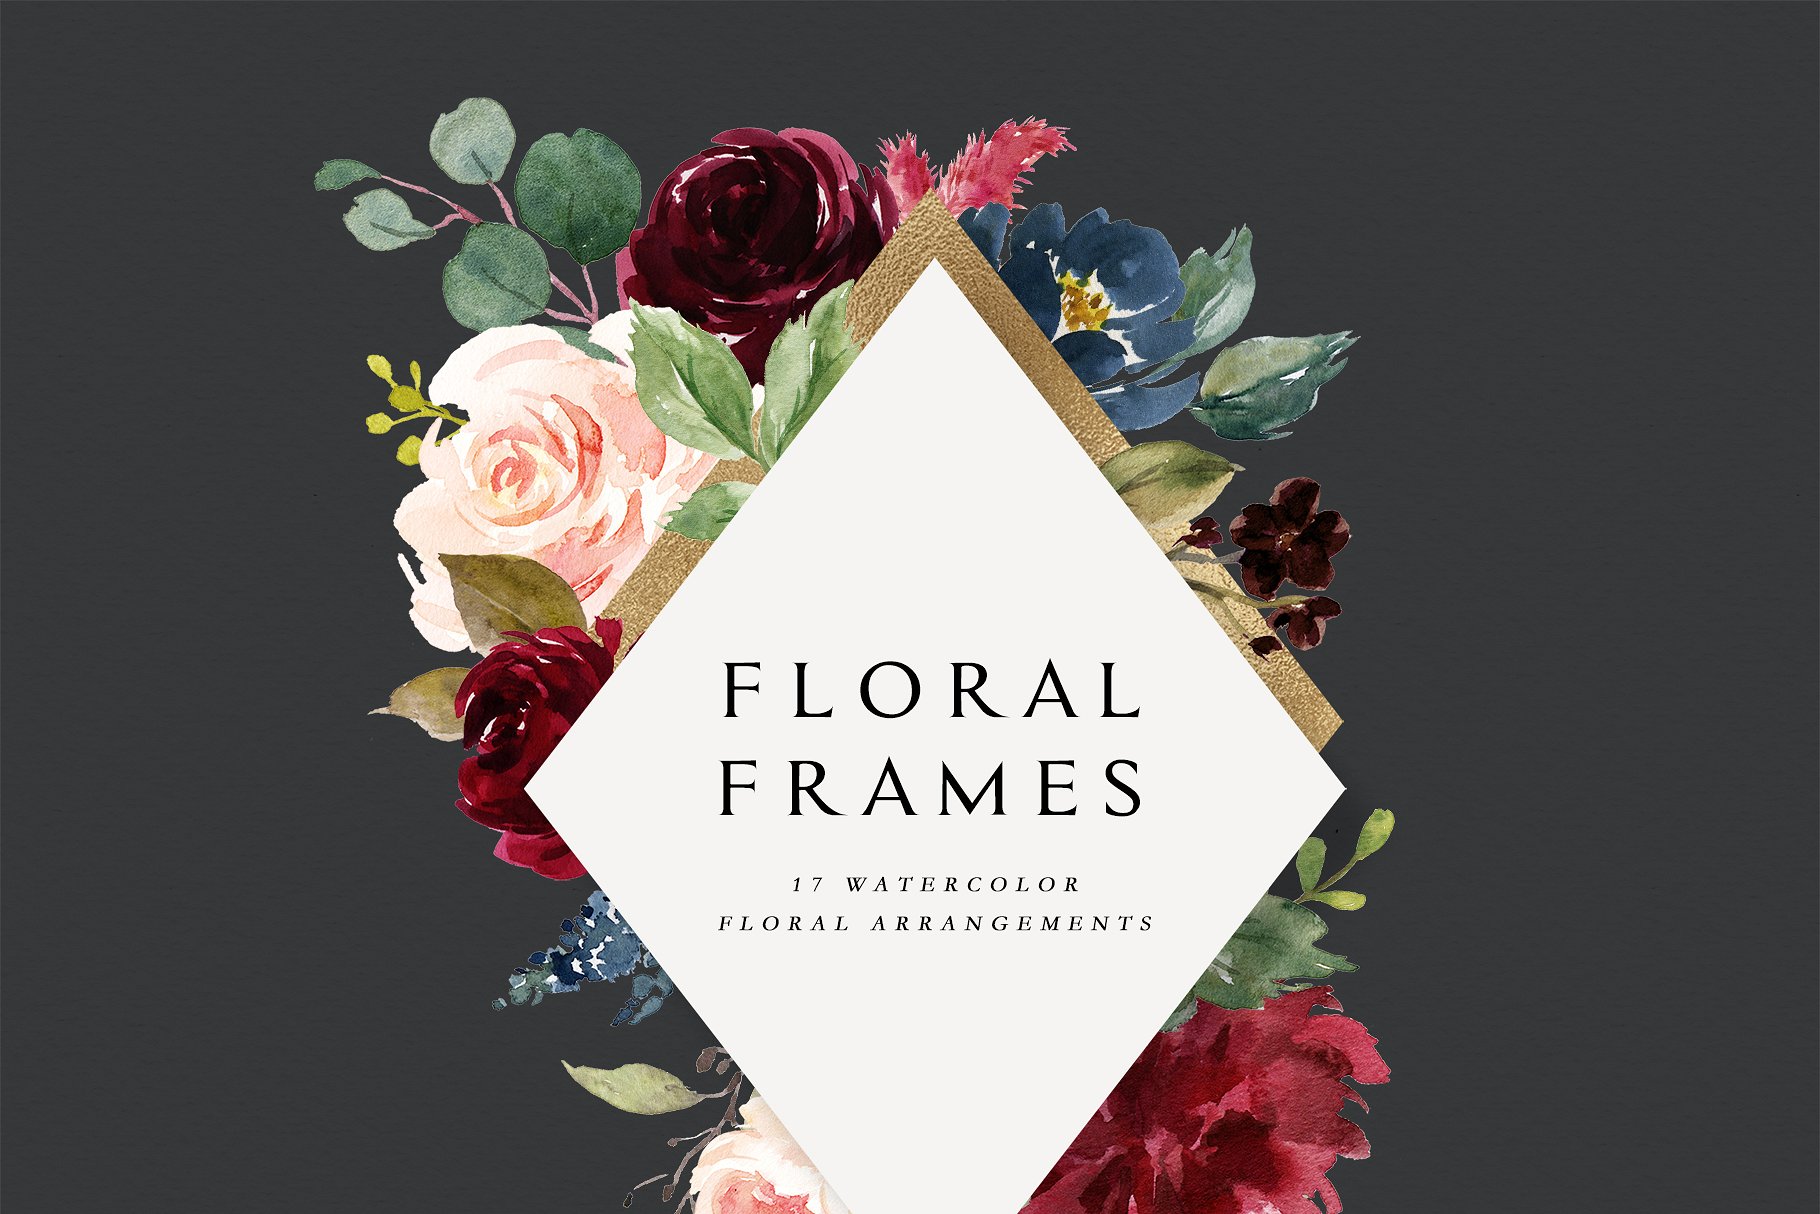 极力推荐：水彩花卉素材 Burgundy&Navy Floral Graphic Set [1.63GB]插图(4)